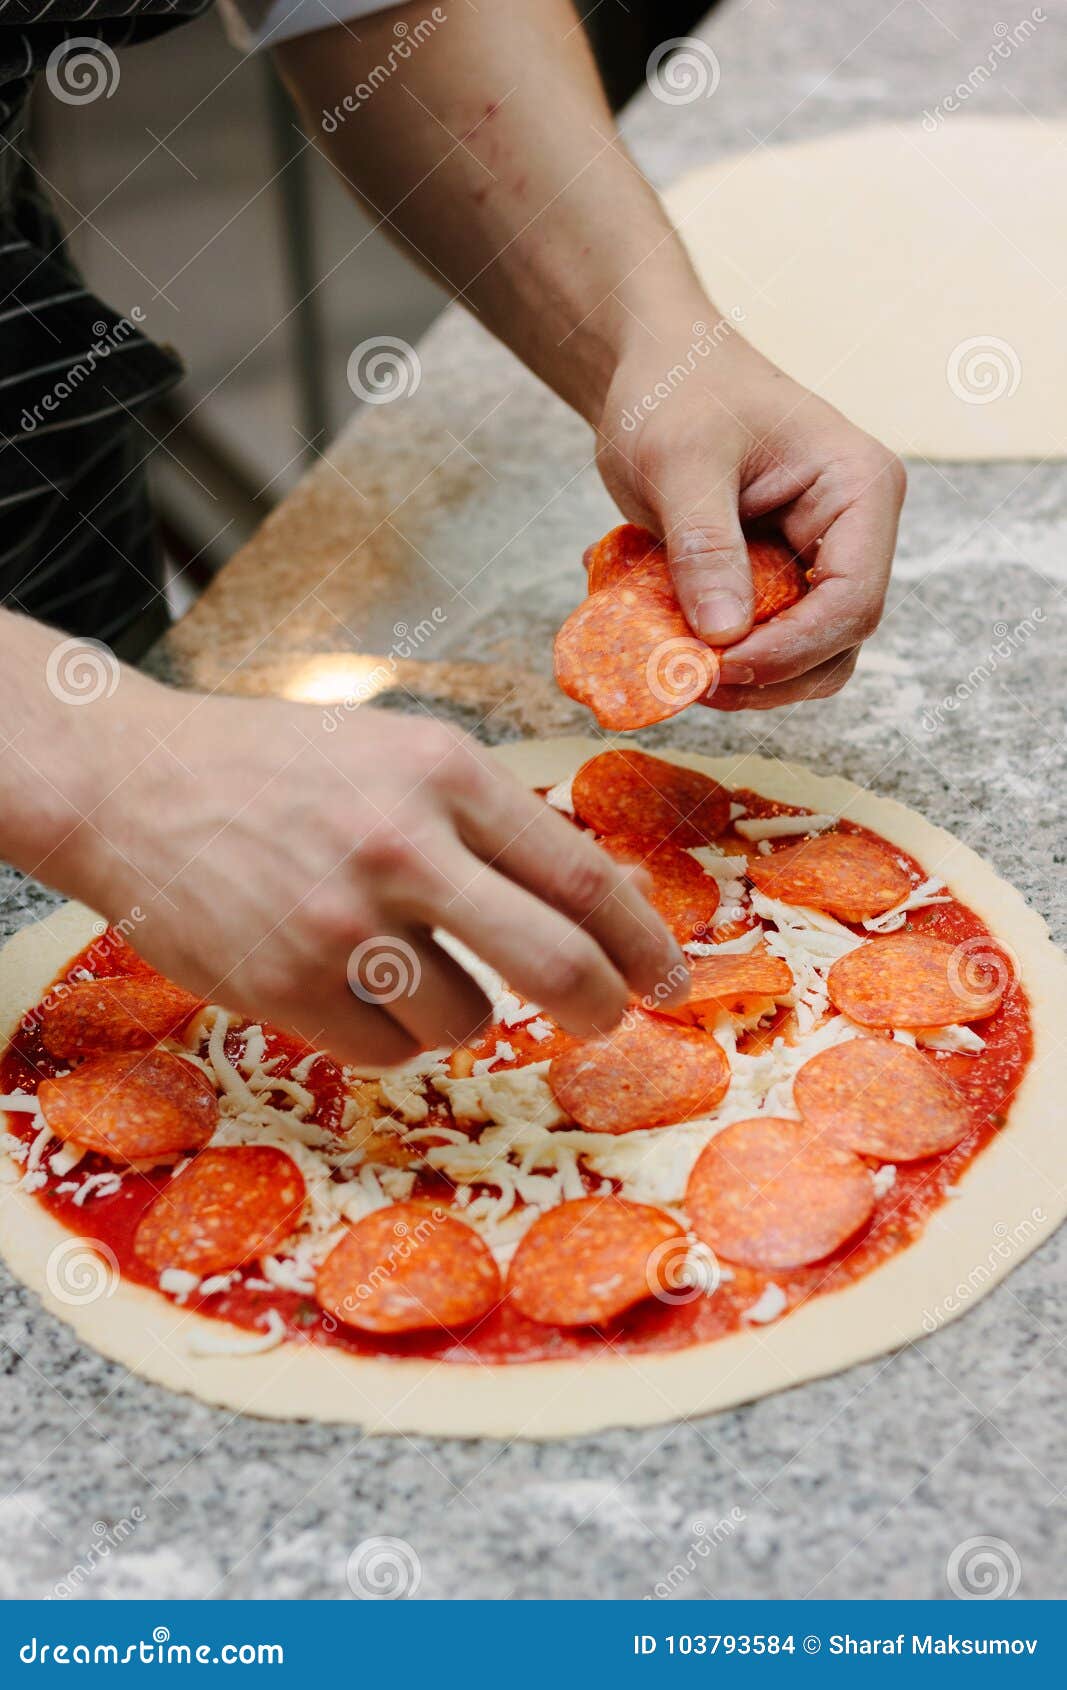 что ложат в пиццу на тесто фото 112